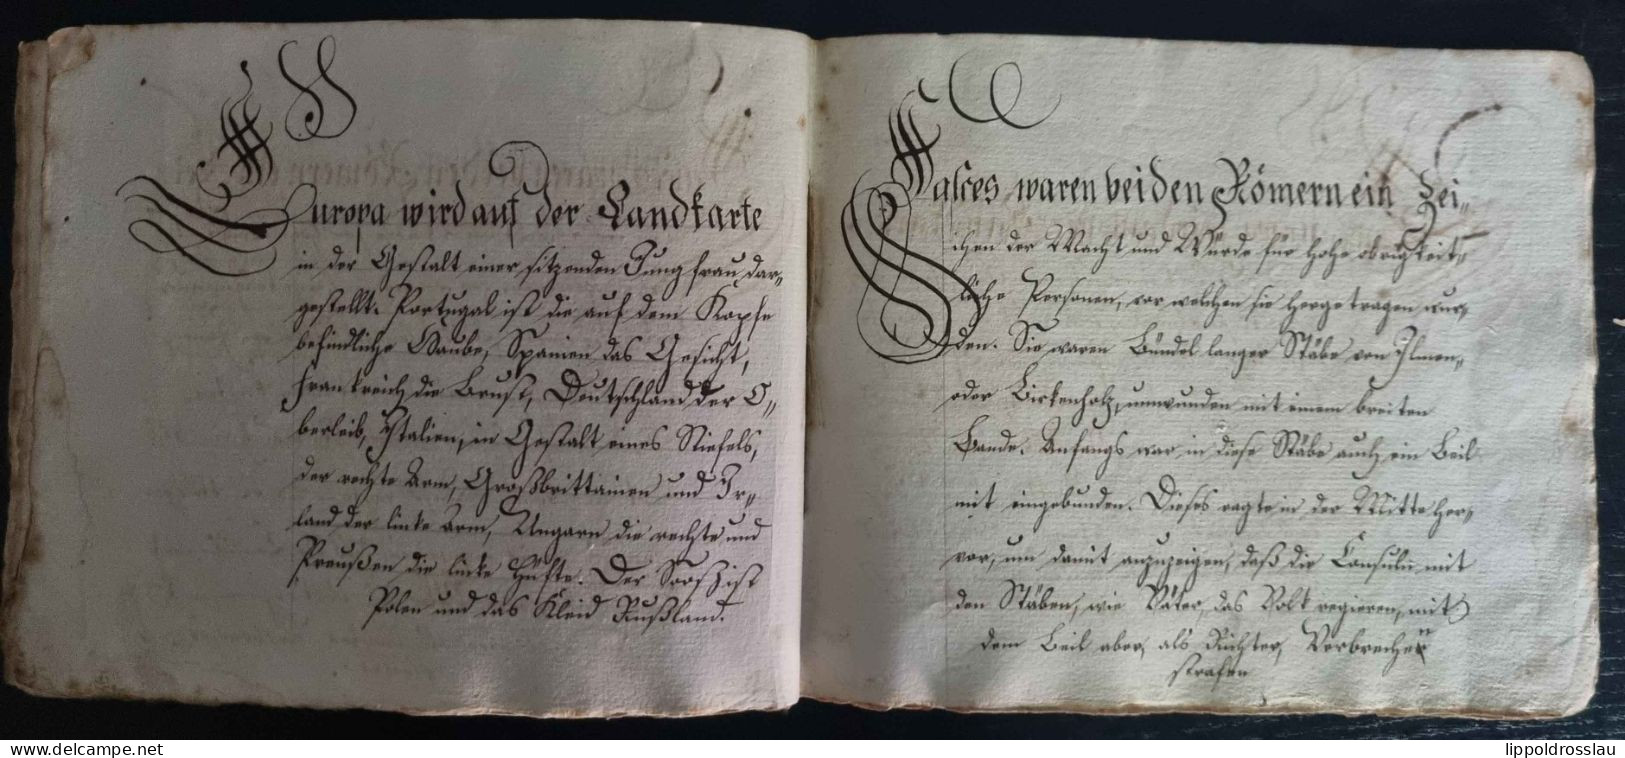 Schreibe-Buch der Sonntagsschule für Sonntag 12. Februar 1837, Bütten handgeschrieben auf 44 Seiten, hoch interessanter